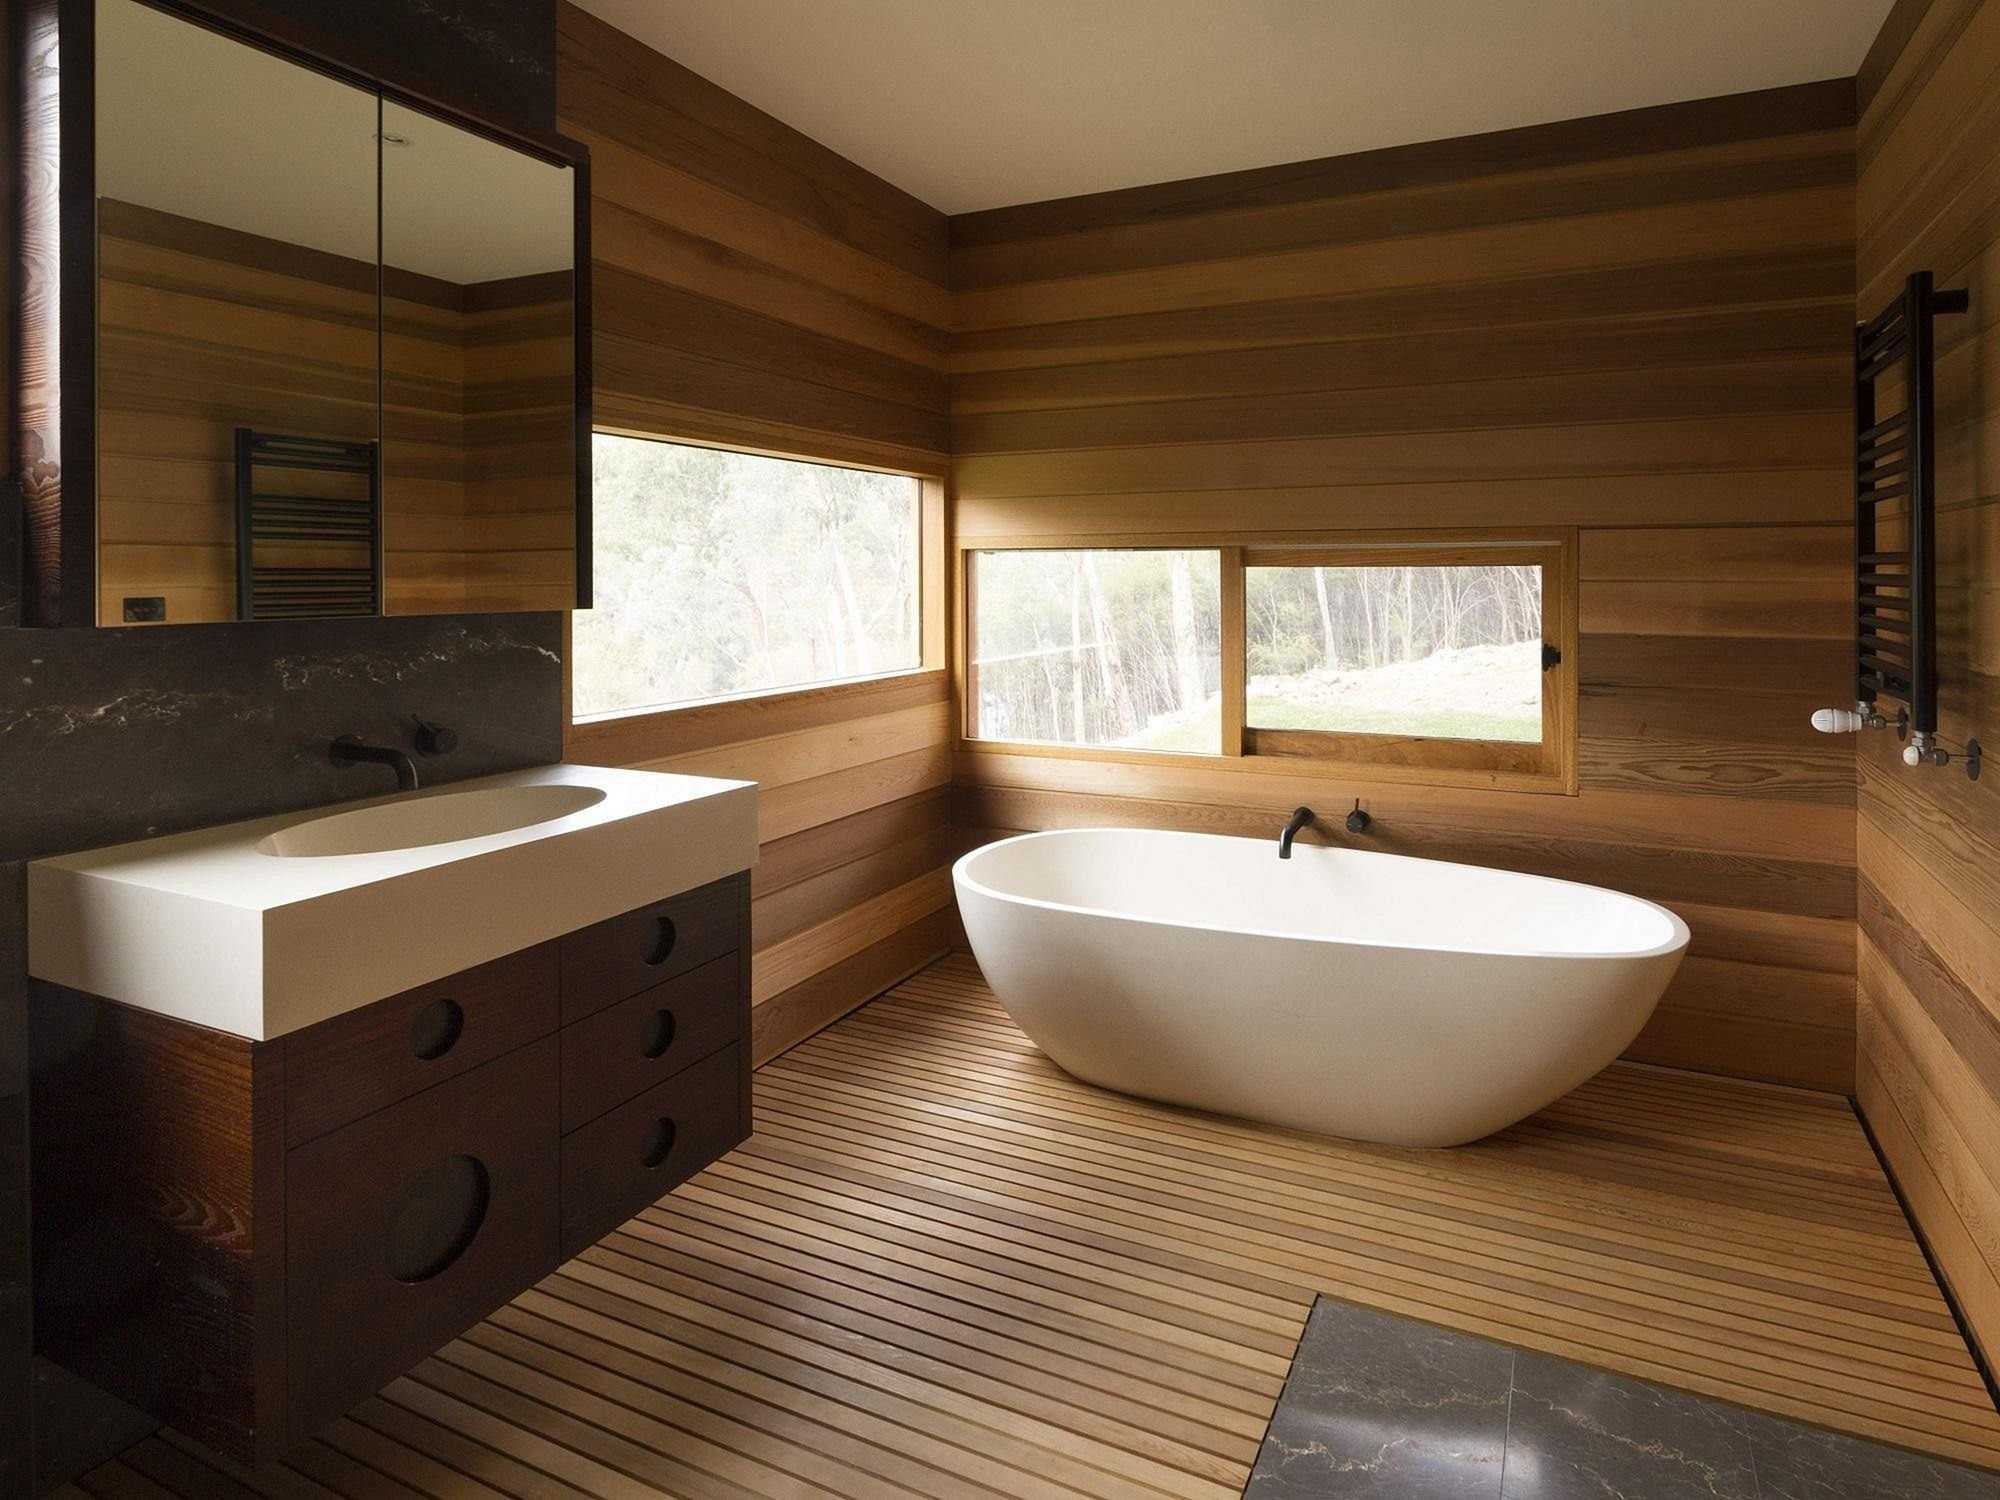 Отделка деревянной комнаты. Ванная комната отделка деревом. Ванная с деревом. Ванная отделанная деревом. Ванная комната с отделкой под дерево.